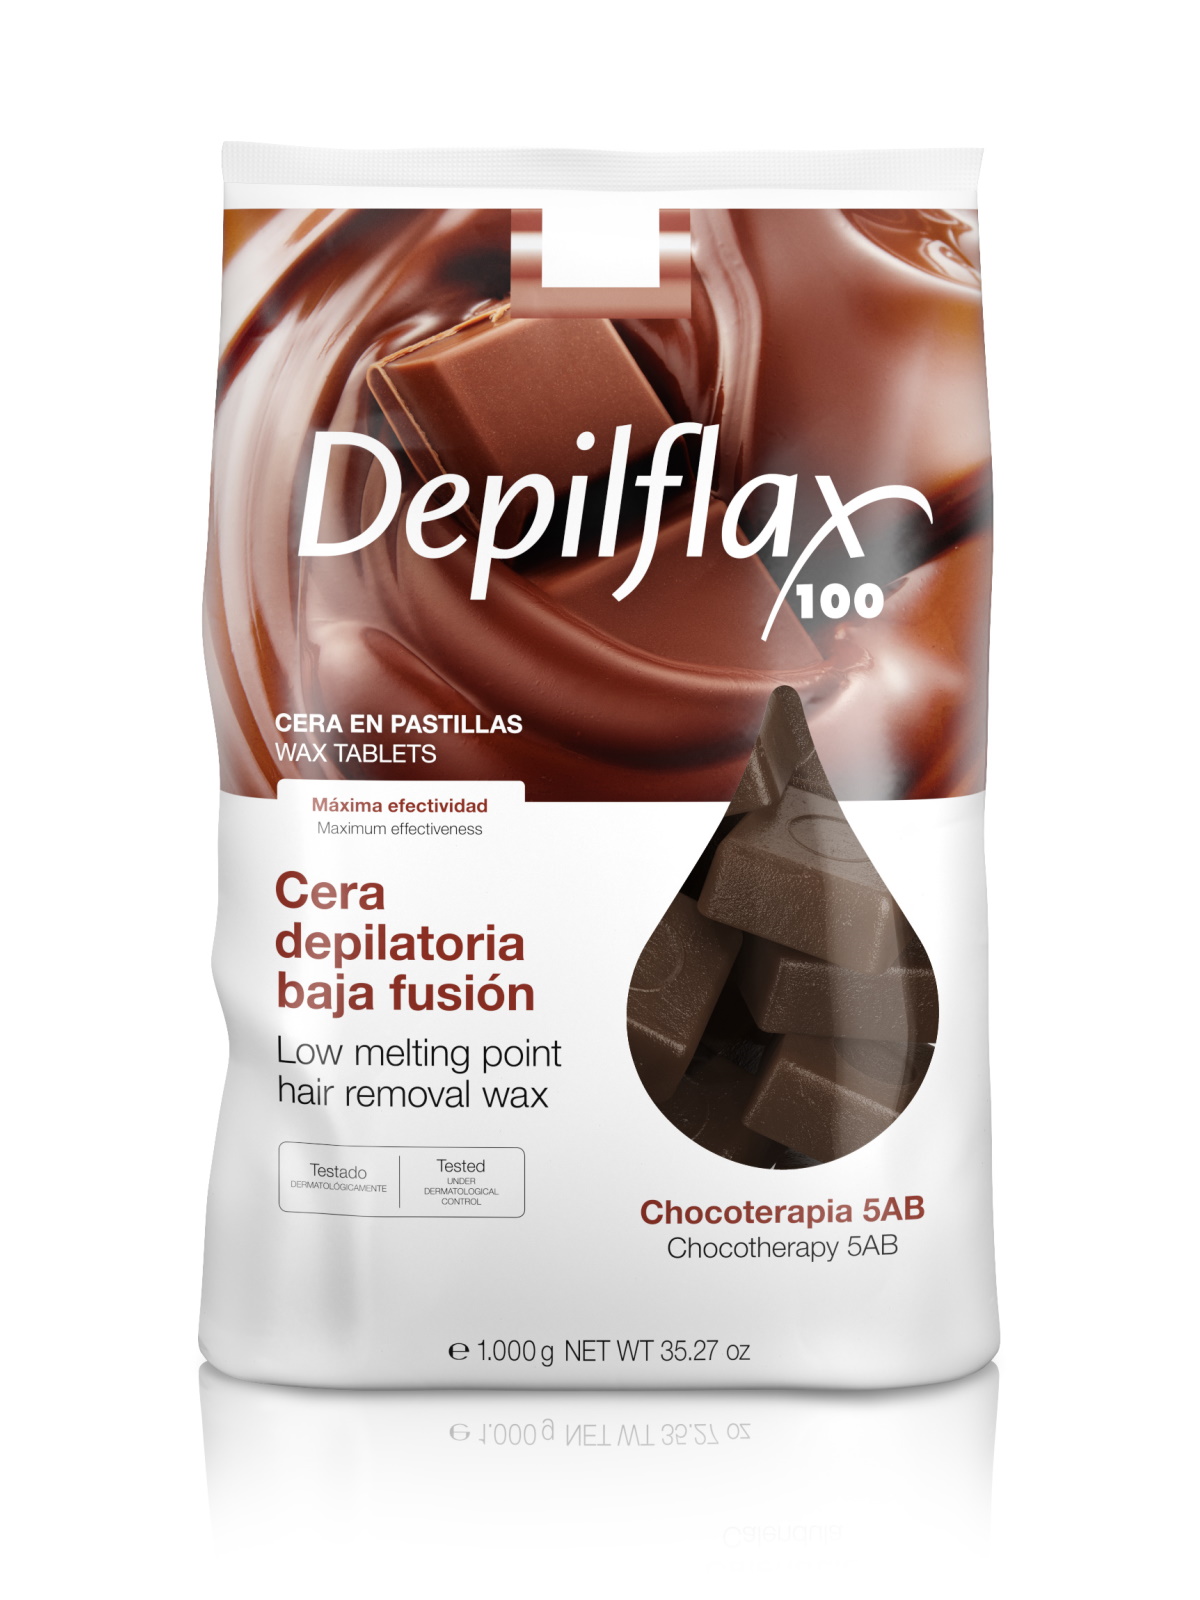 Воск для депиляции Depilflax Какао 1 кг воск в картриджах worldepil шоколадный для депиляции